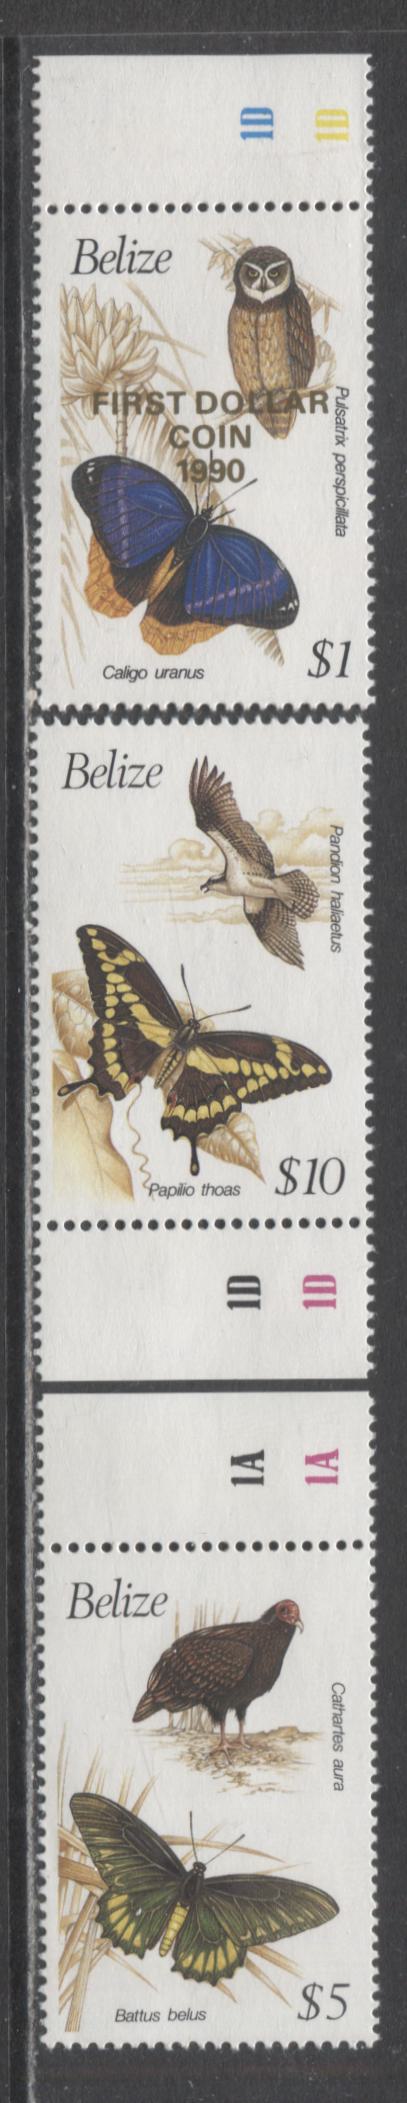 Lot 147 Belize SC#942-944 1990 Birds & Butterflies & '1st Dollar Coin' Overprint Issues, 3 VFNH/OG Singles, 2017 Scott Cat. $25.5